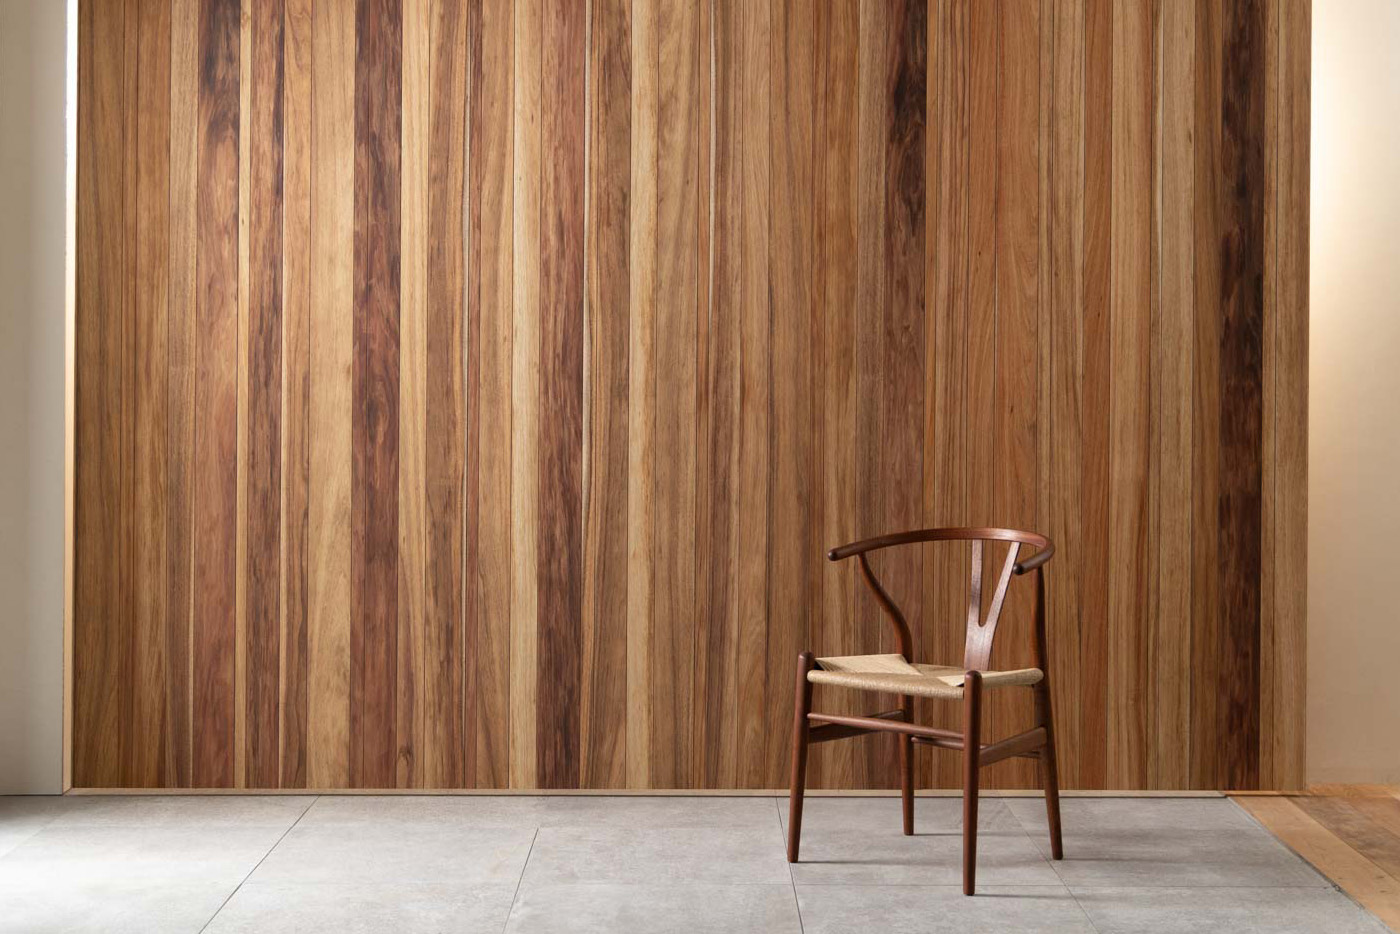 ウッド調の壁の前に置かれた木製の椅子